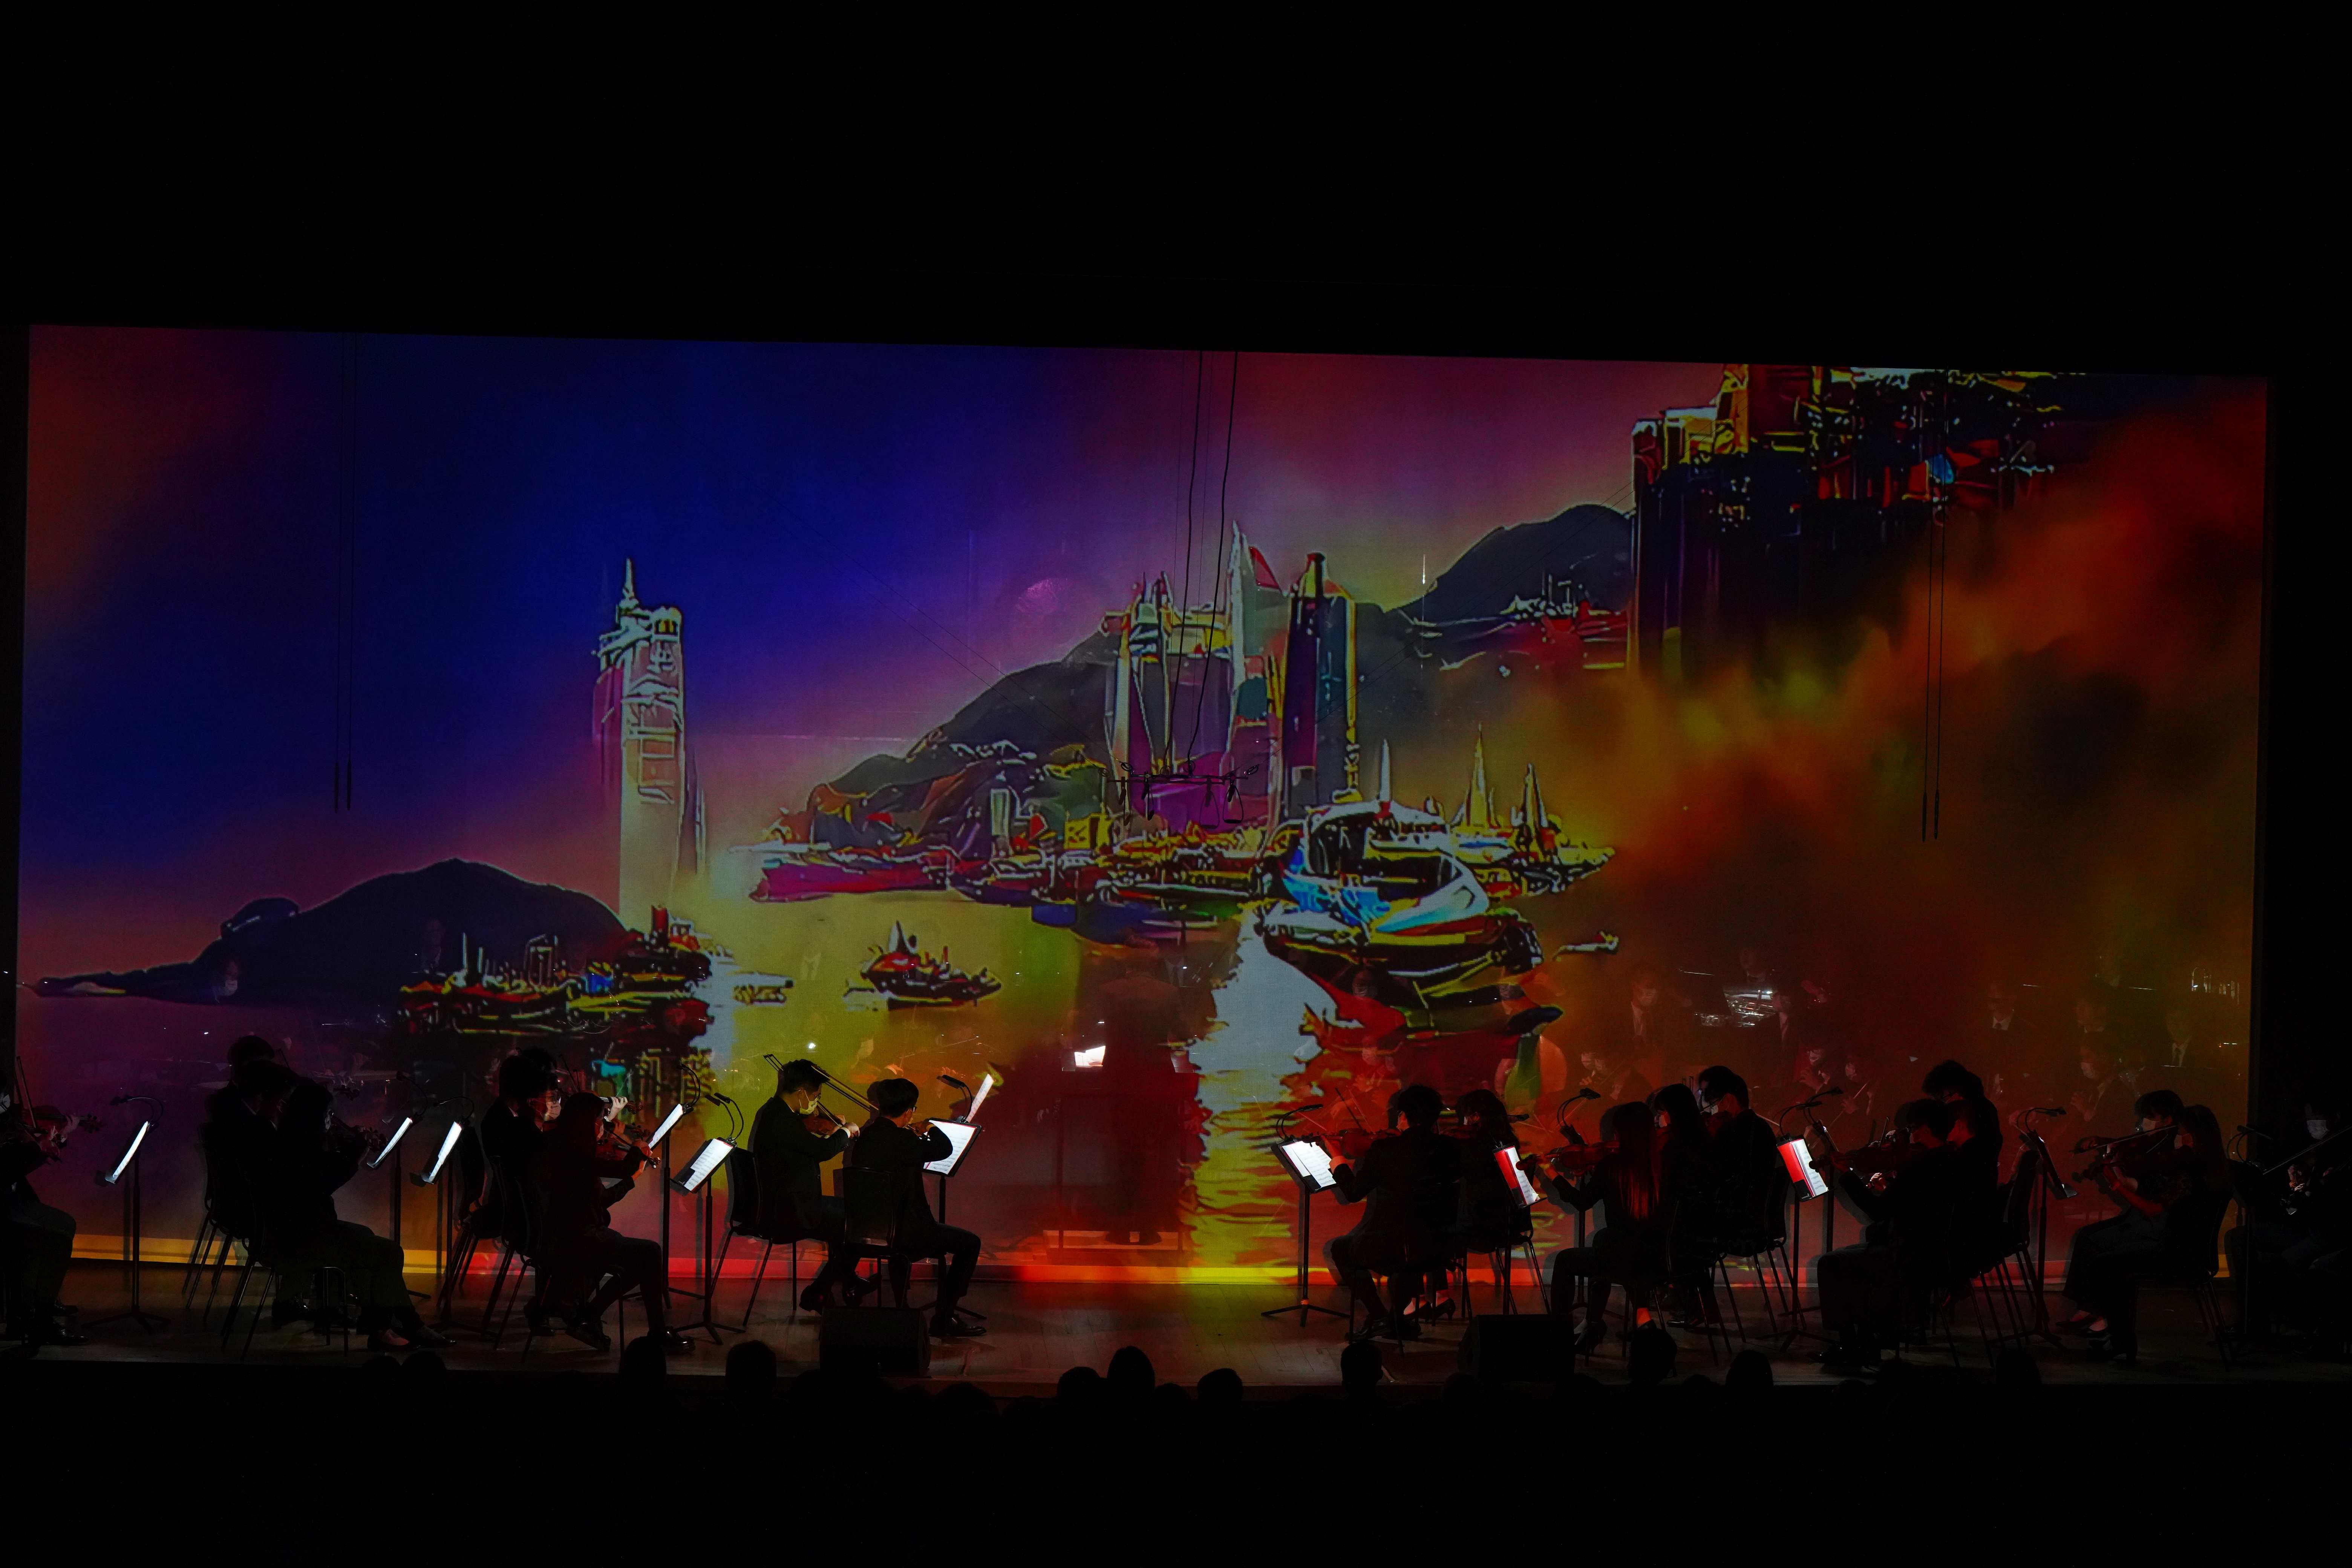 浸大交响乐团与AI虚拟合唱团一同演绎新编的管弦乐合唱《东方之珠》，并由AI媒体艺术家创造跨媒体视觉影像。